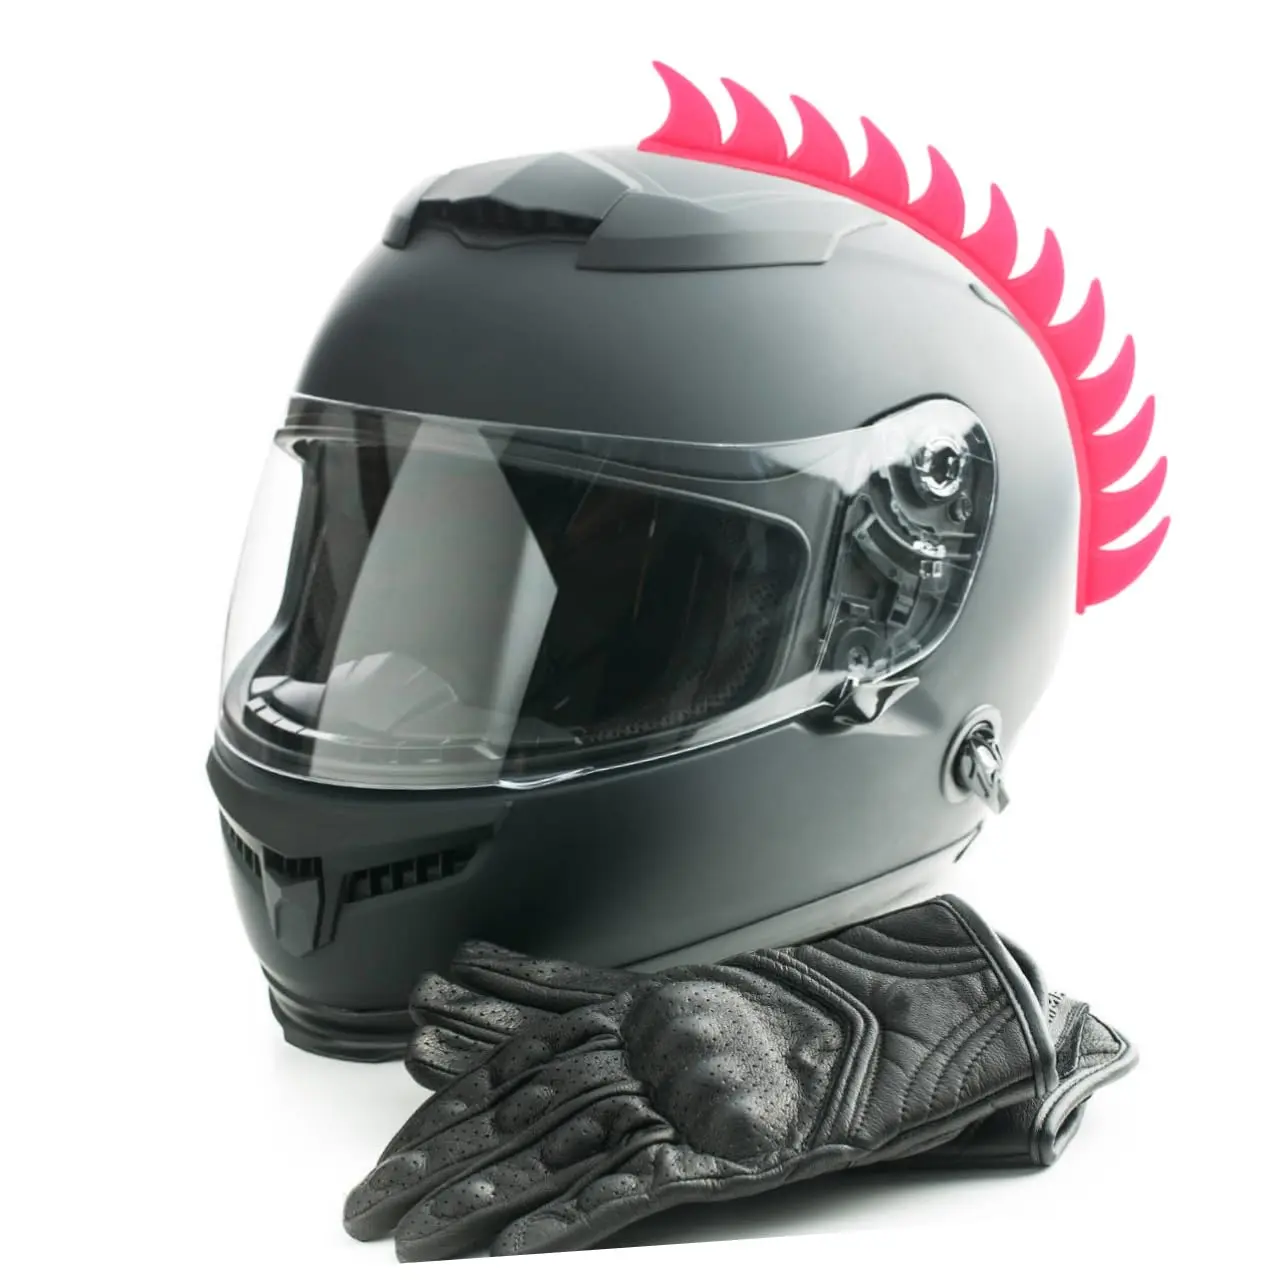 decoraciones para cascos de motos - Qué se pone debajo del casco de moto